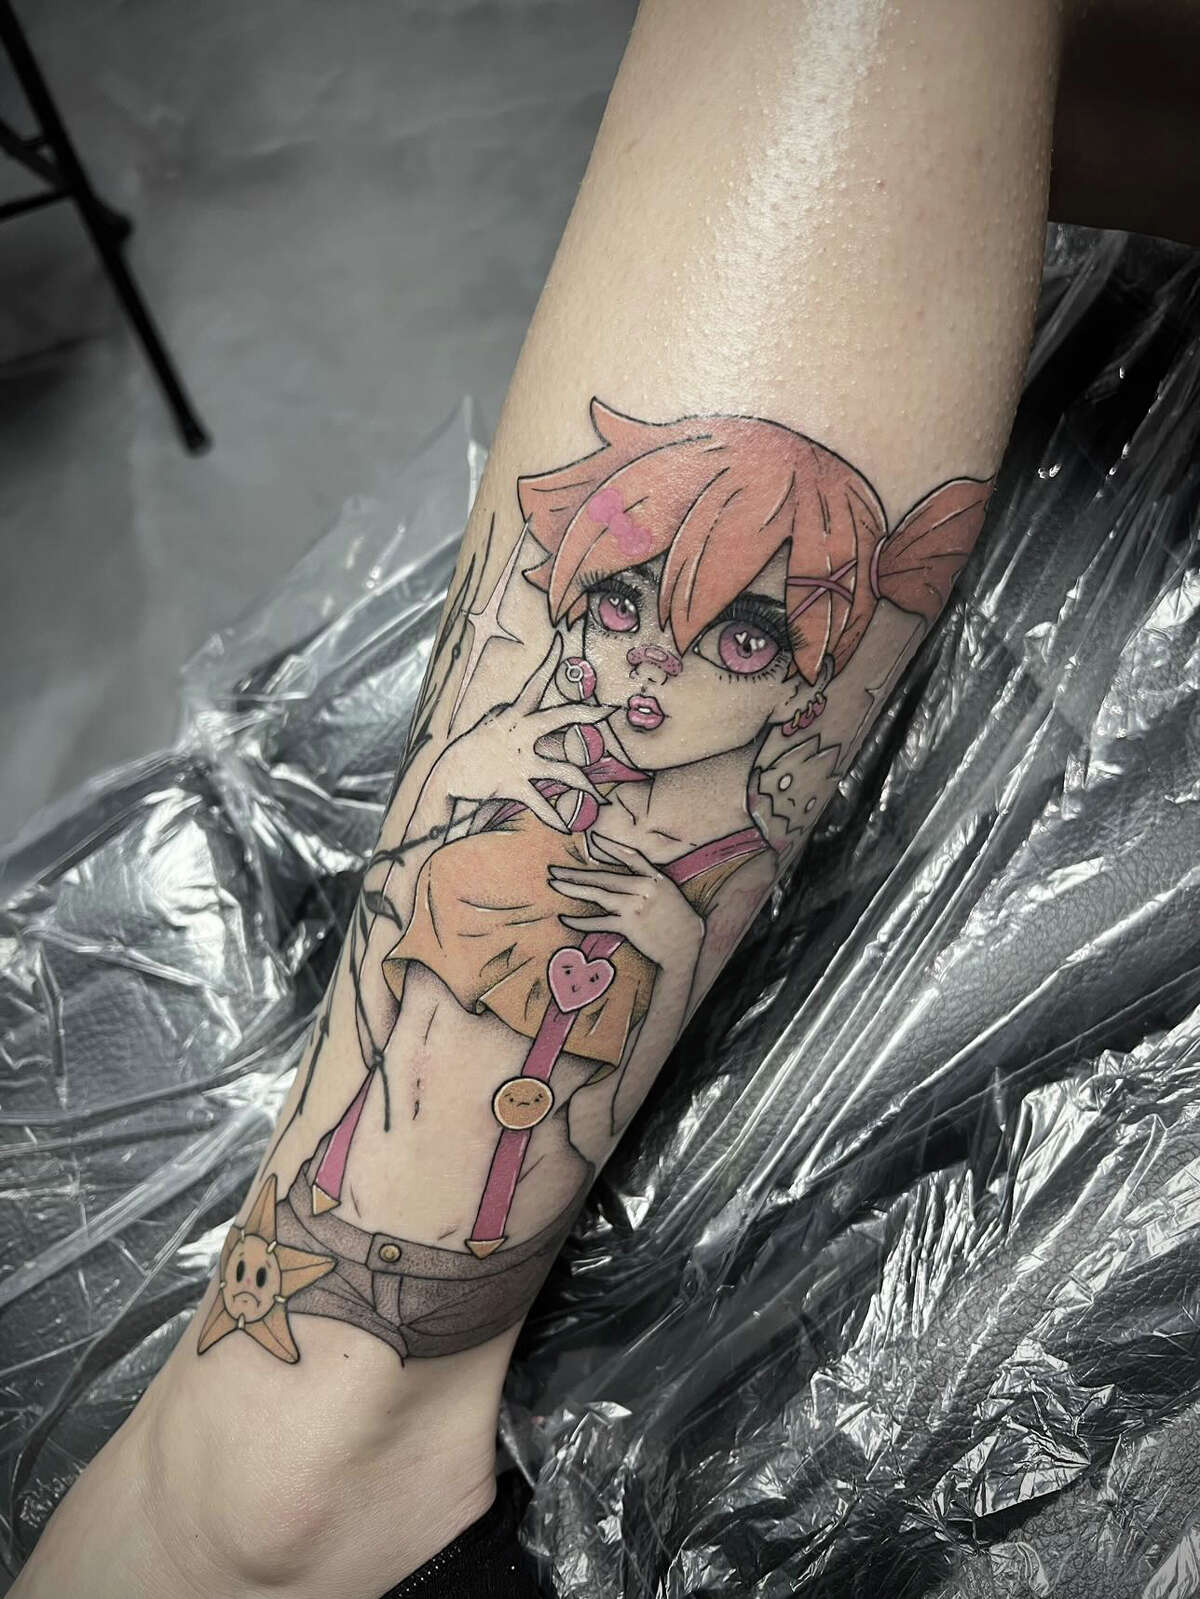 TATTOOS IDEAS & INSPIRATION | Anime tattoos, Ghibli tattoo, Nerdy tattoos